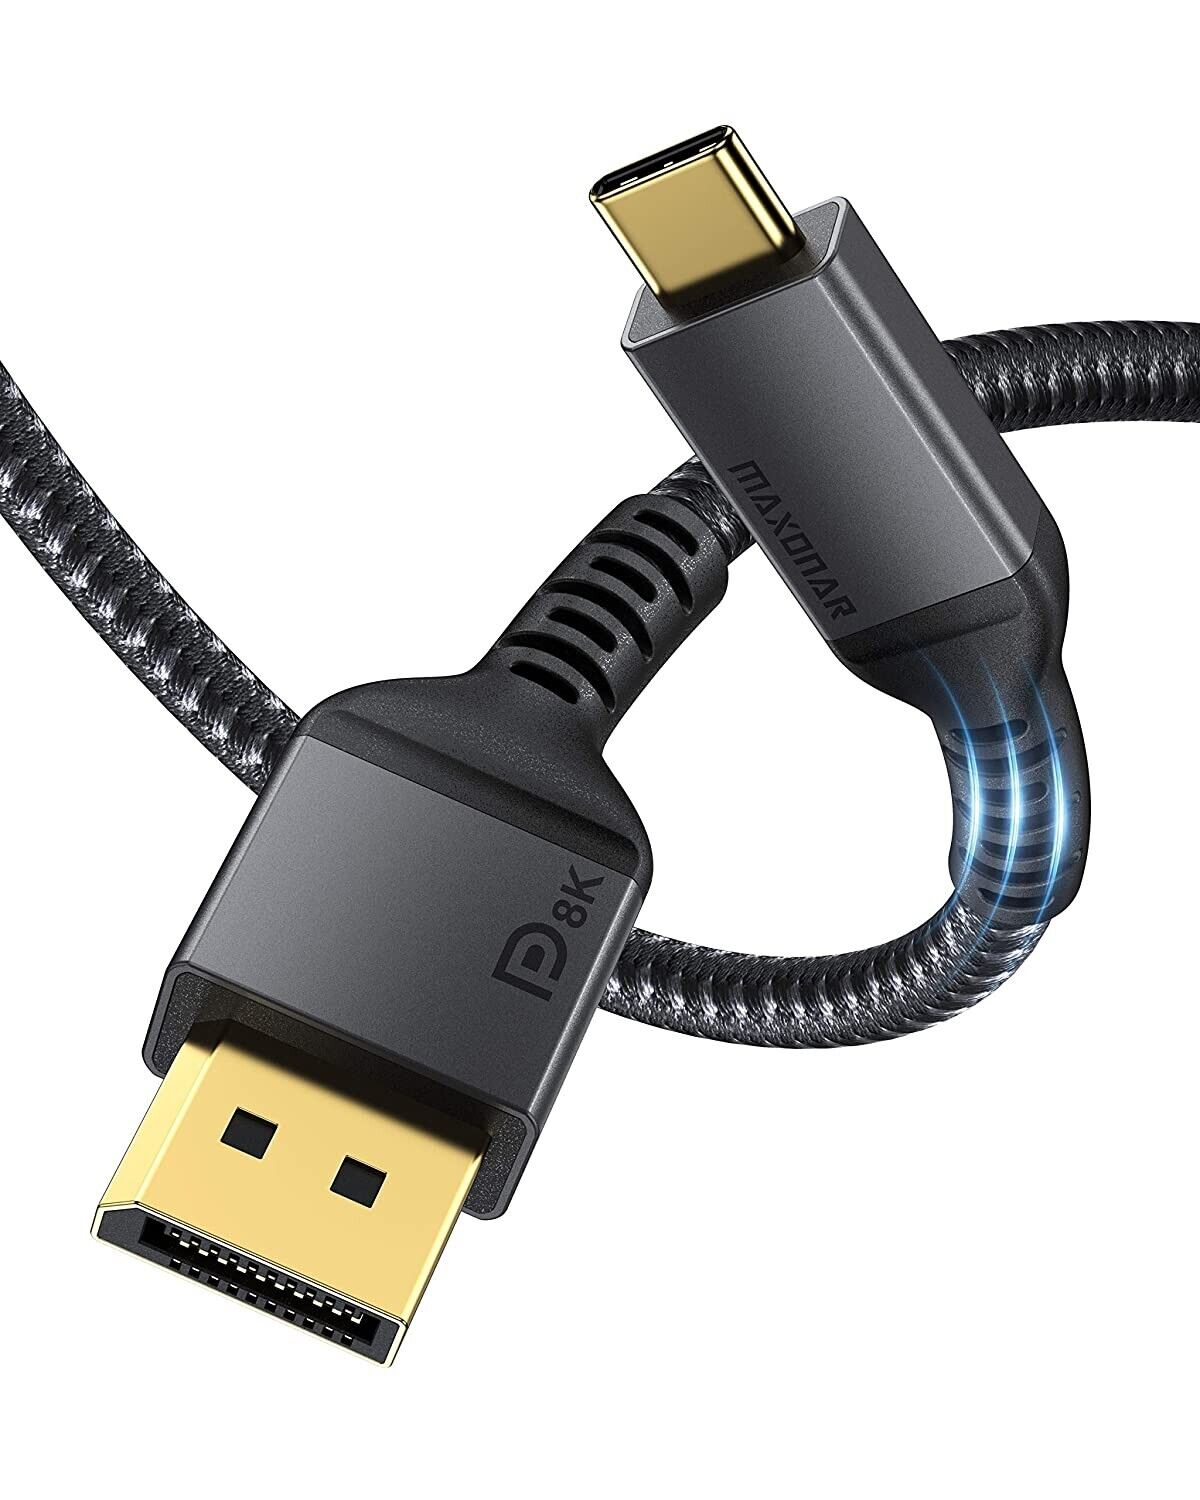 USB C to DisplayPort Cable - Maxonar 8K/5K/4K/2K